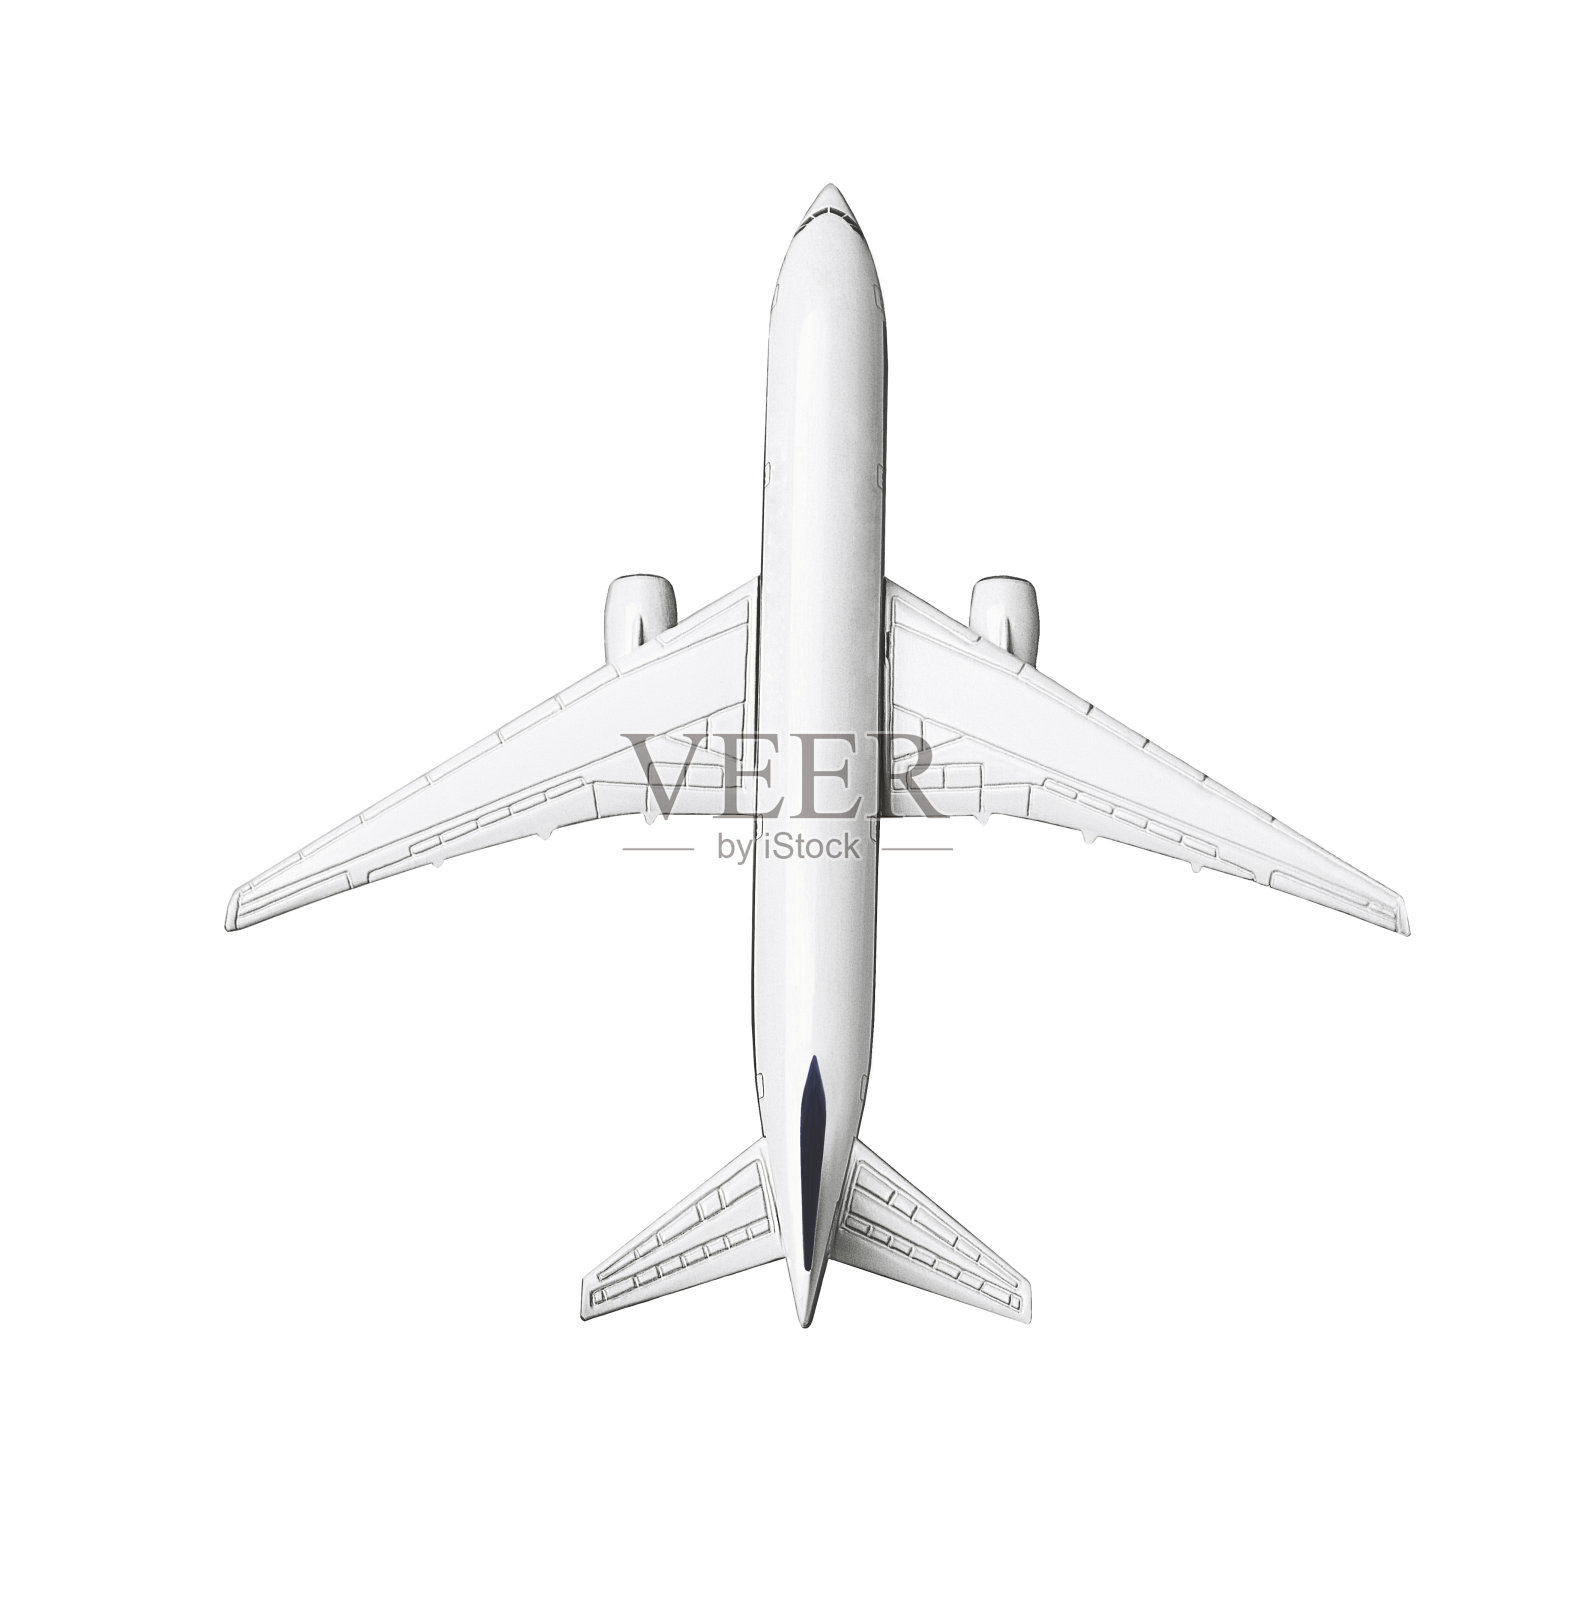 微型商业喷气客机模型照片摄影图片